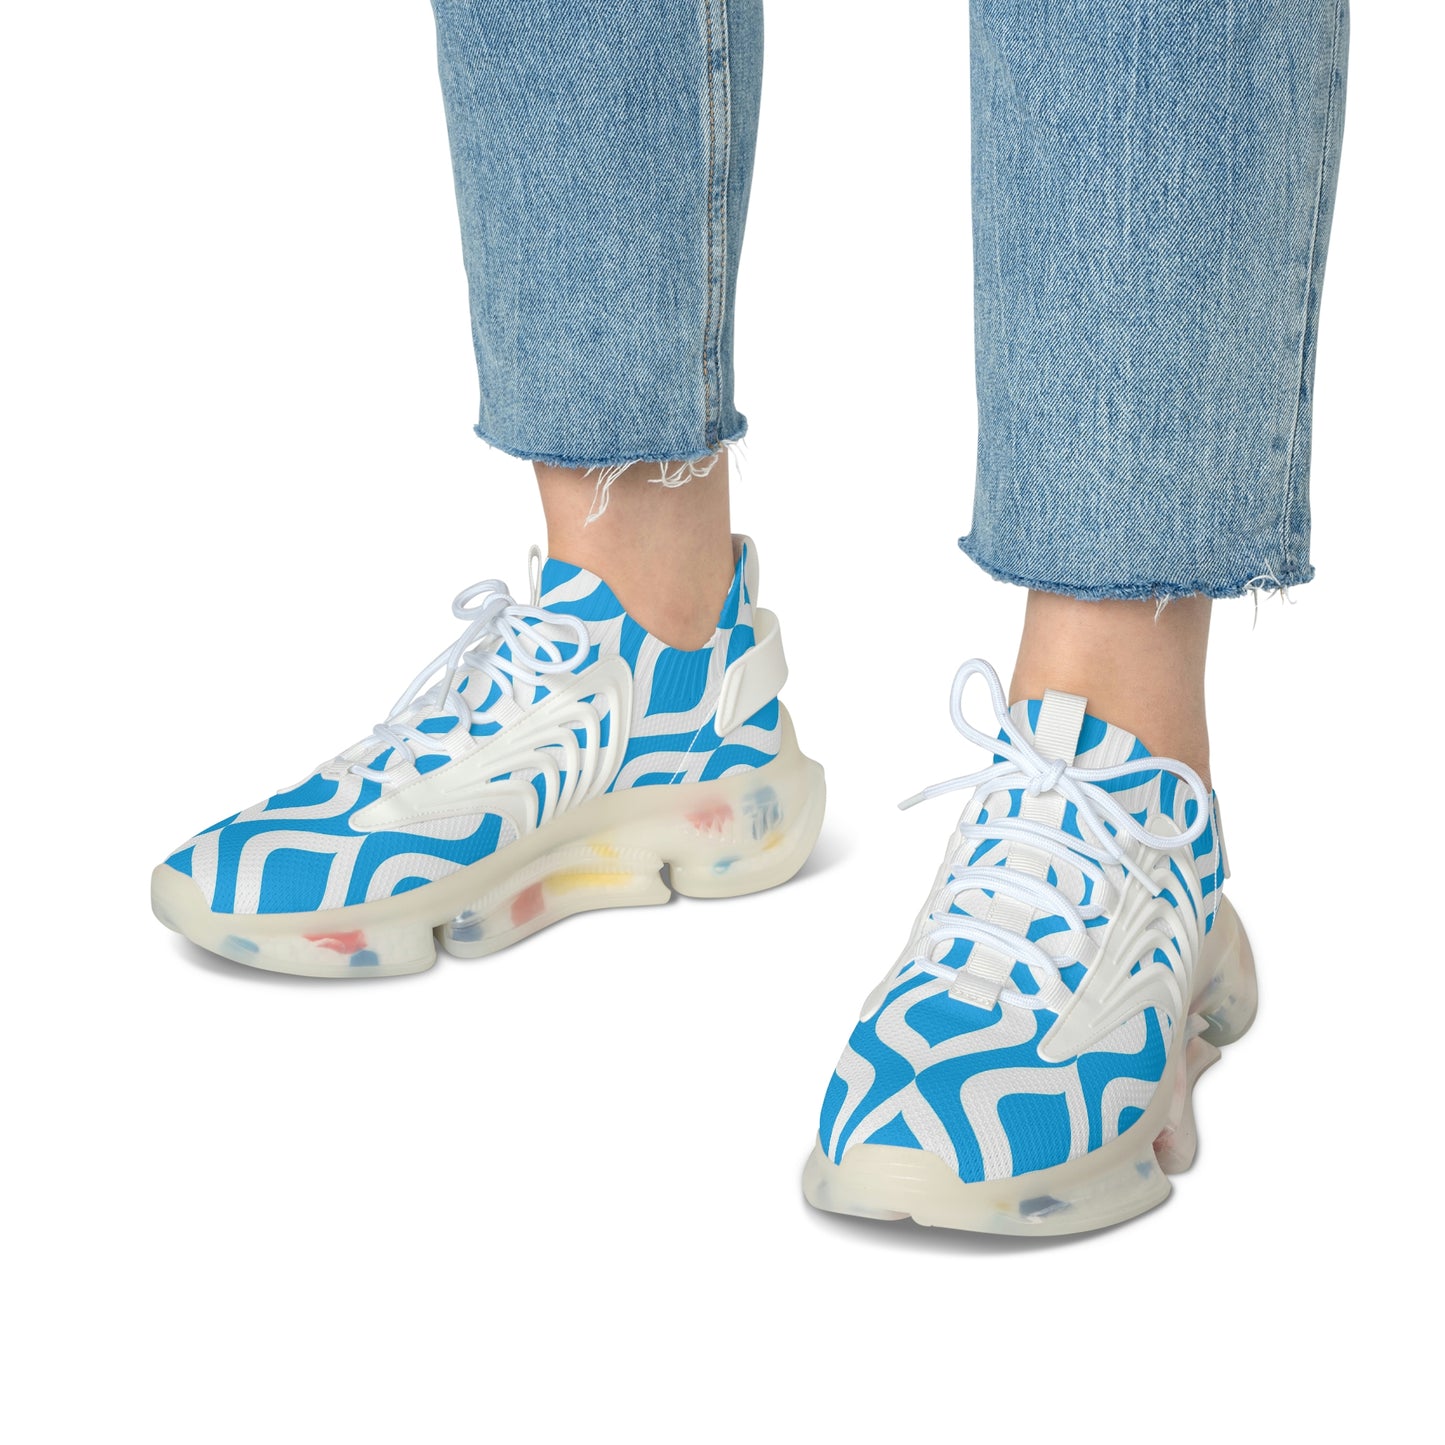 'WaveRider' Women's Mesh Sneakers